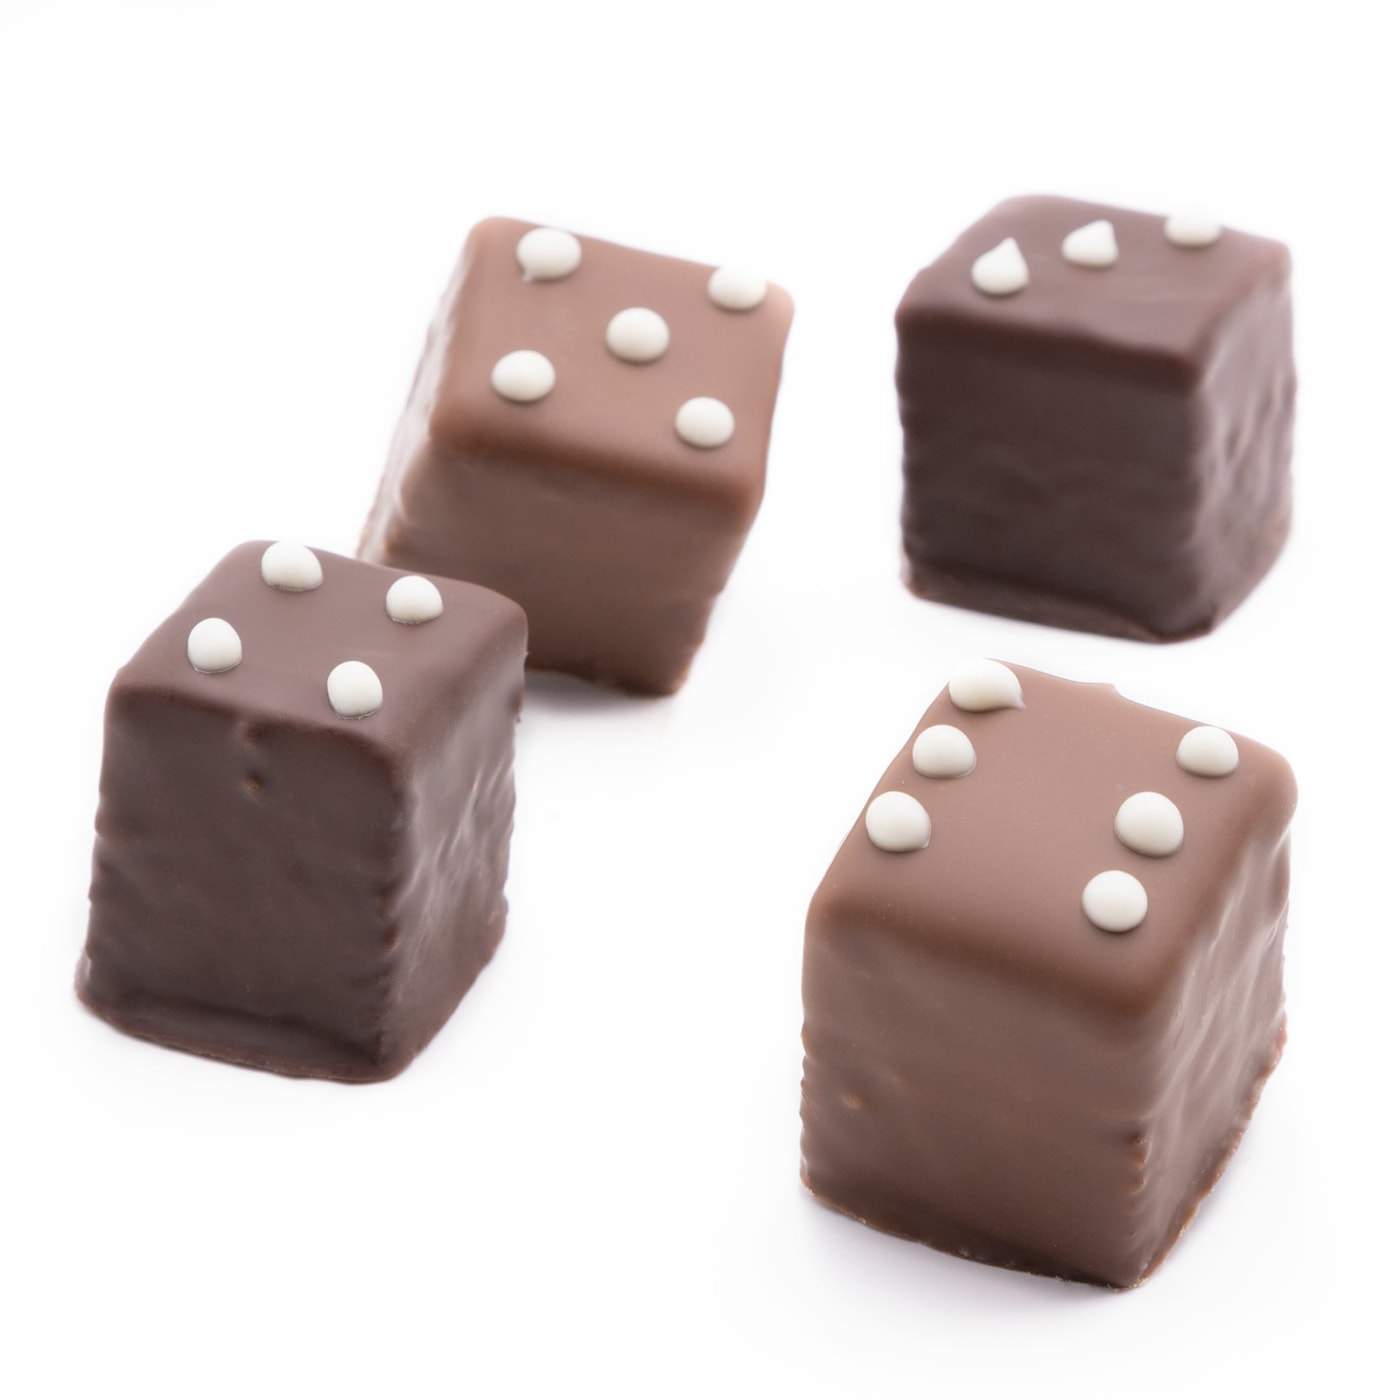 Lebkuchen gefüllt mit Marillengelee, gehüllt in Schokolade